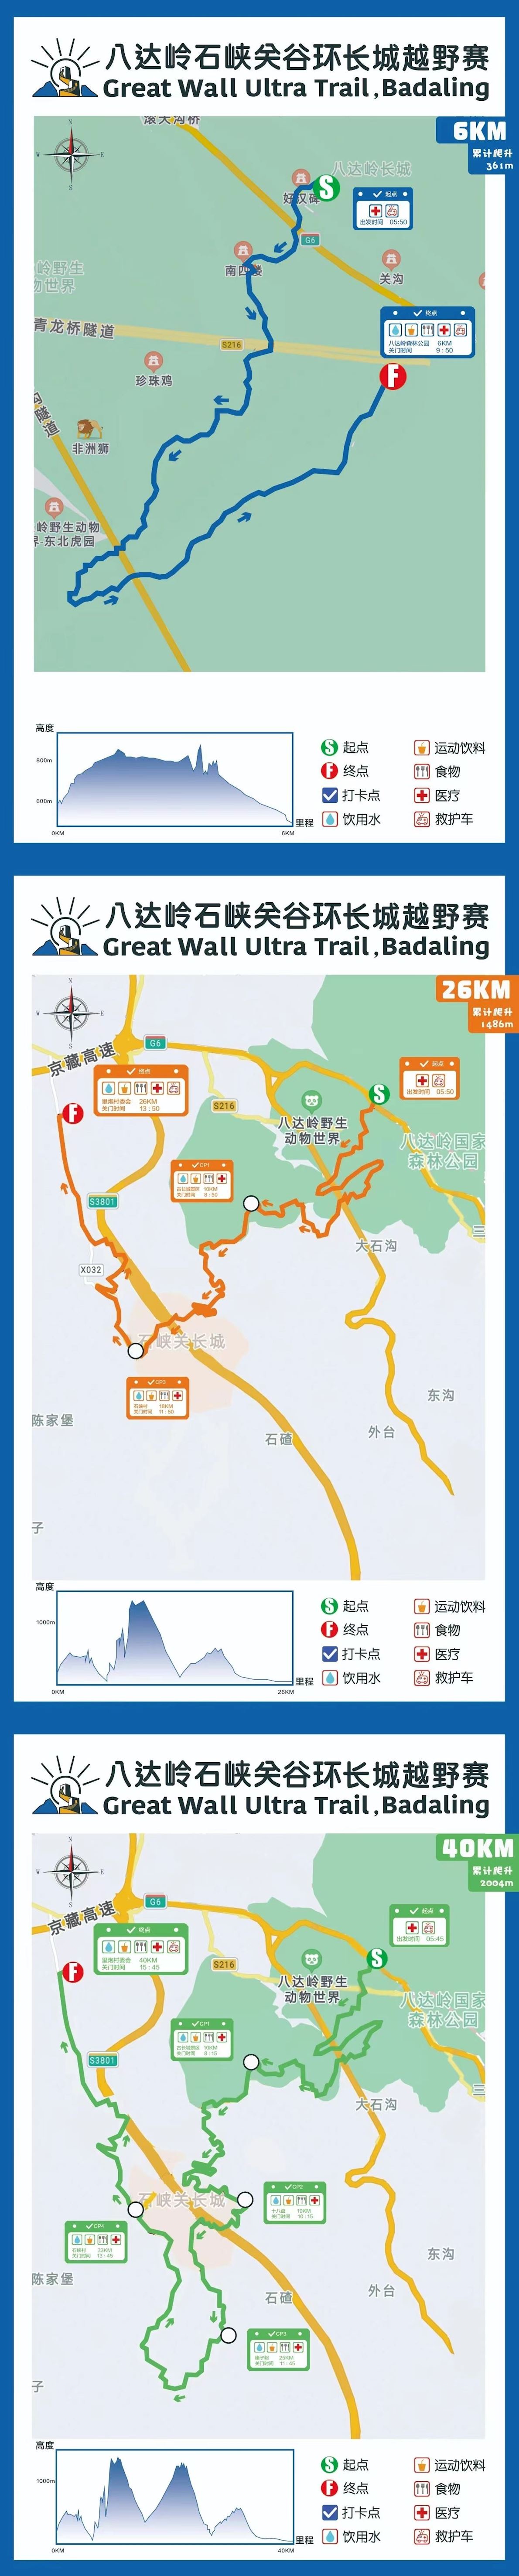 Great Wall Ultra Trail, Badaling 路线图